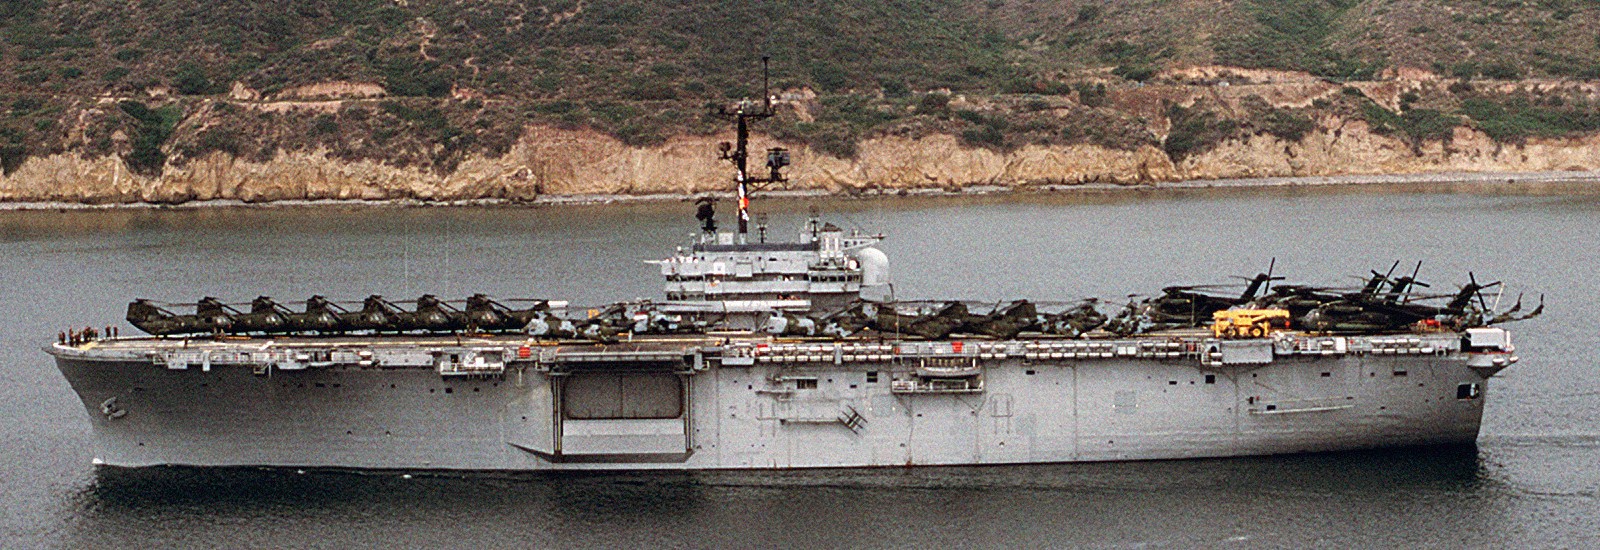 lph-11 uss new orleans iwo jima class amphibious assault ship landing helicopter us navy 19